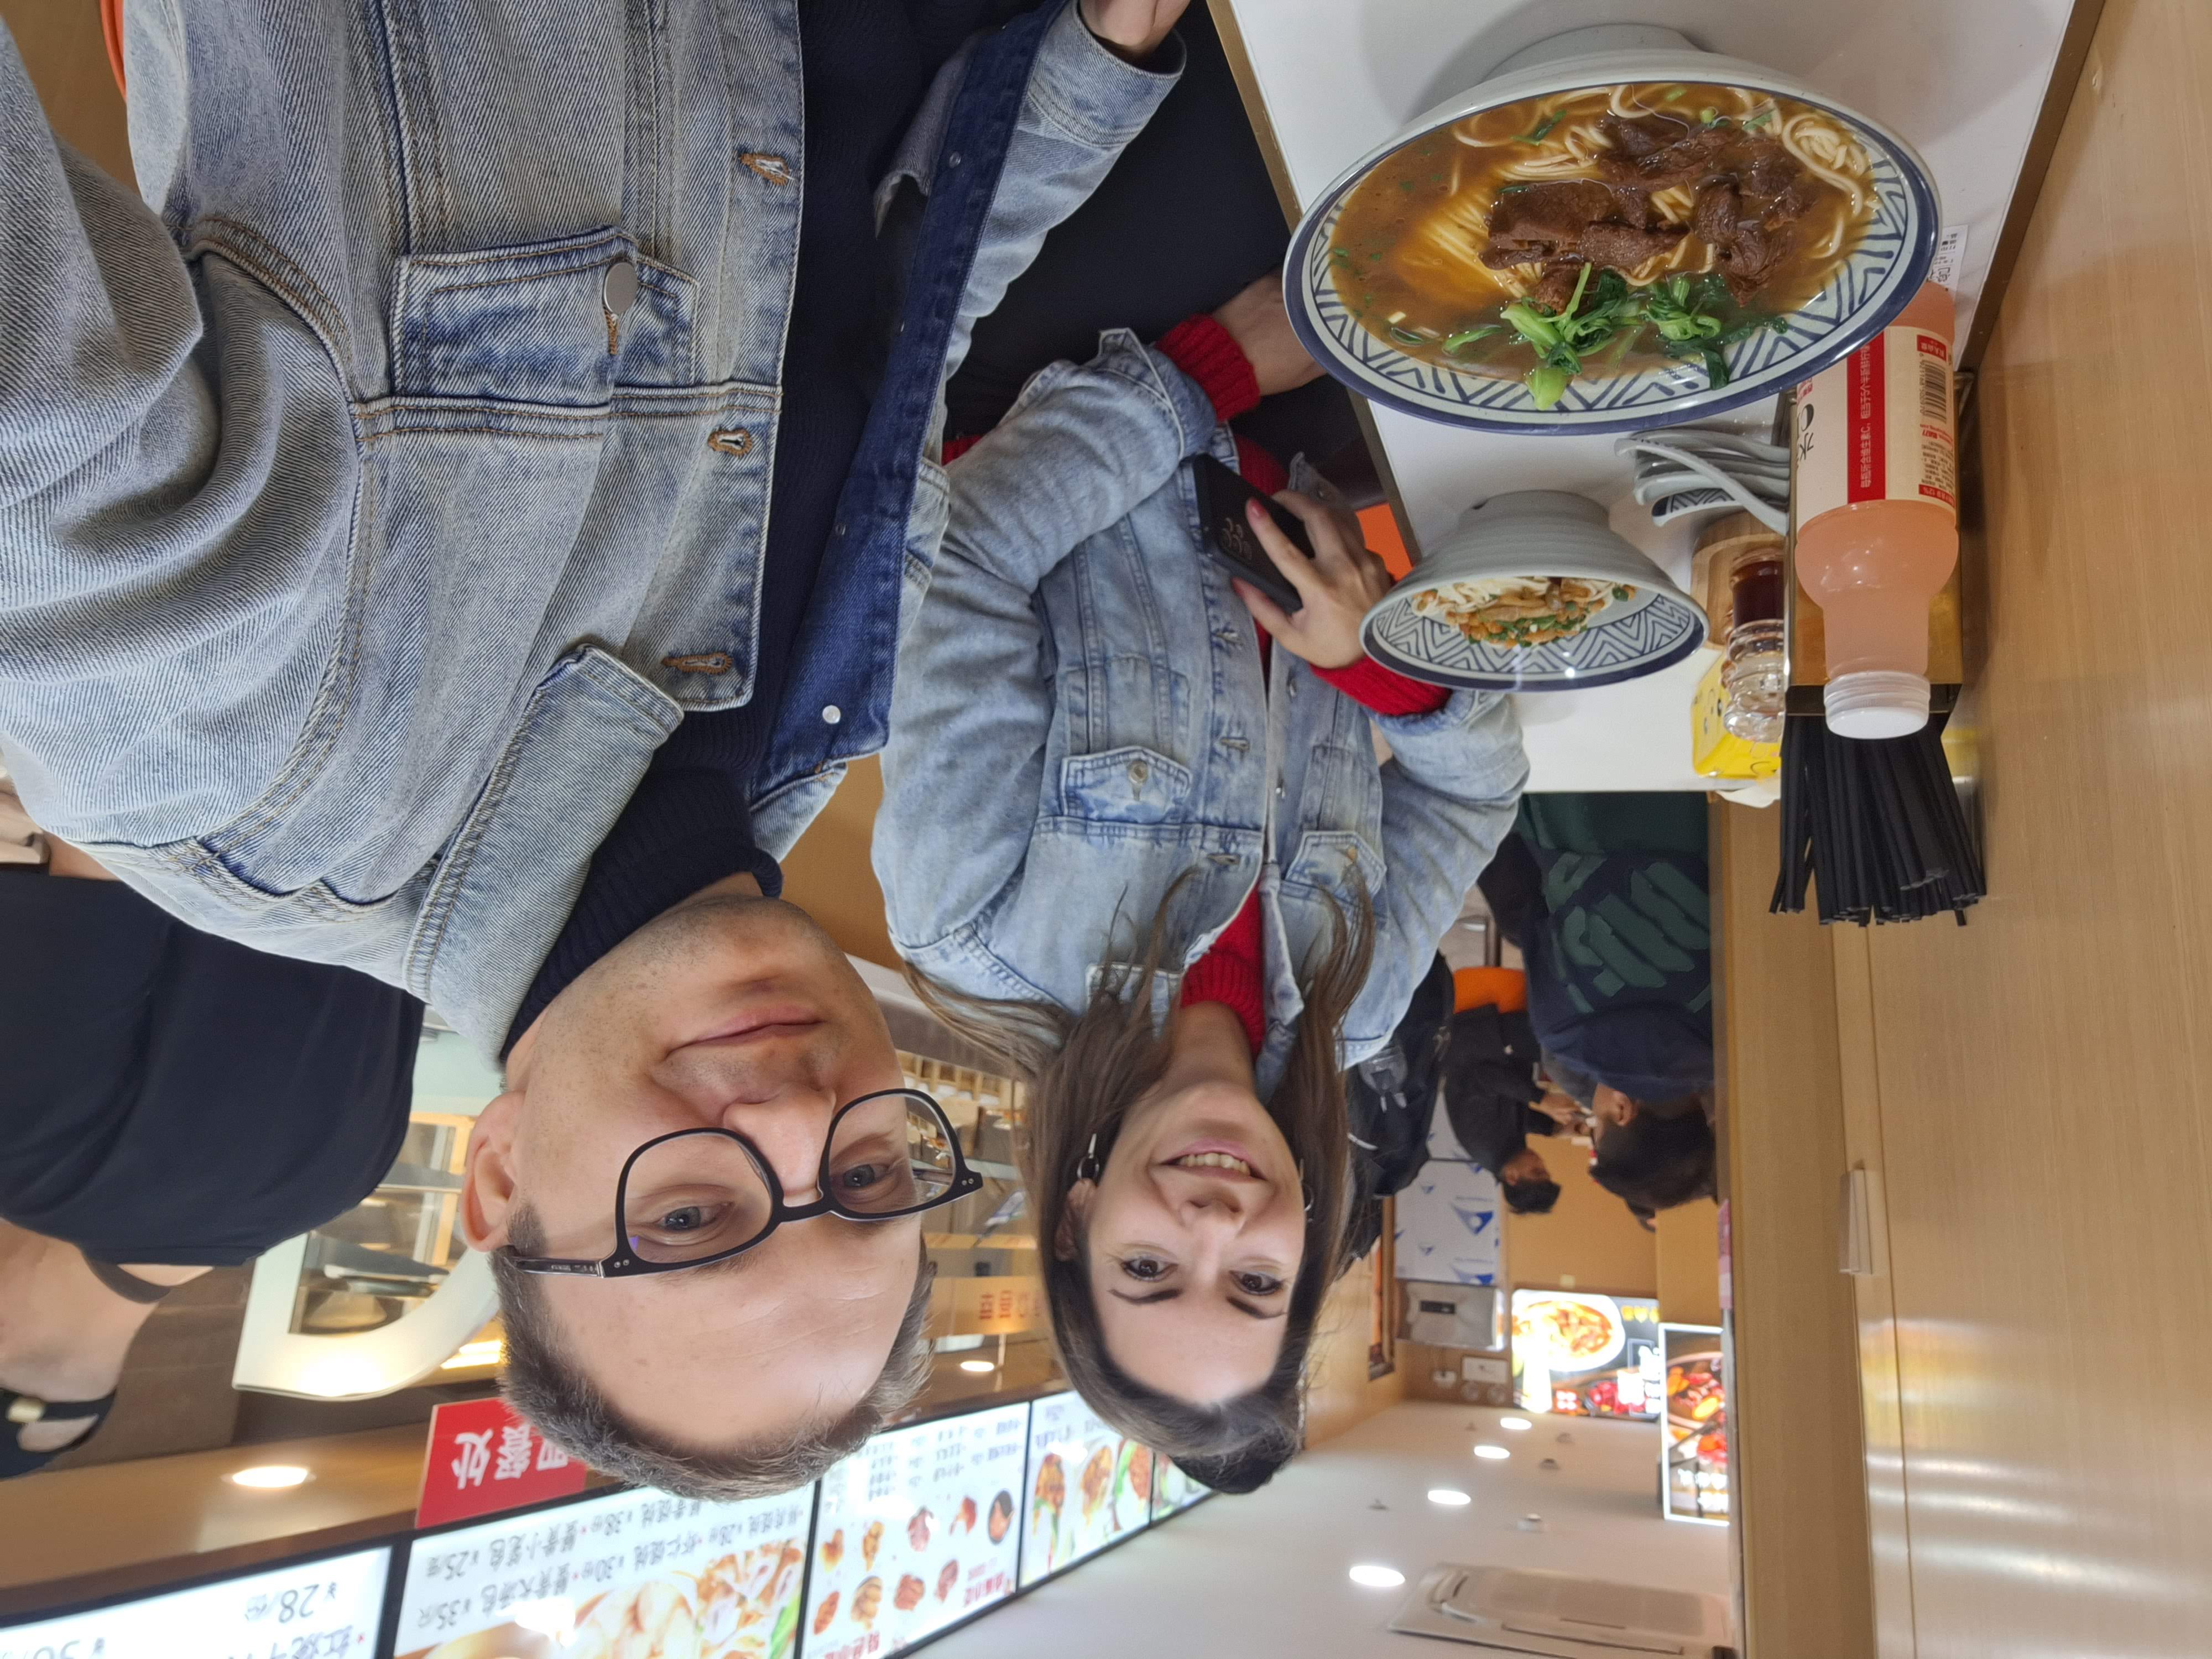 A rizs-tészta-leves vonalon viszont elég jókat ettünk.